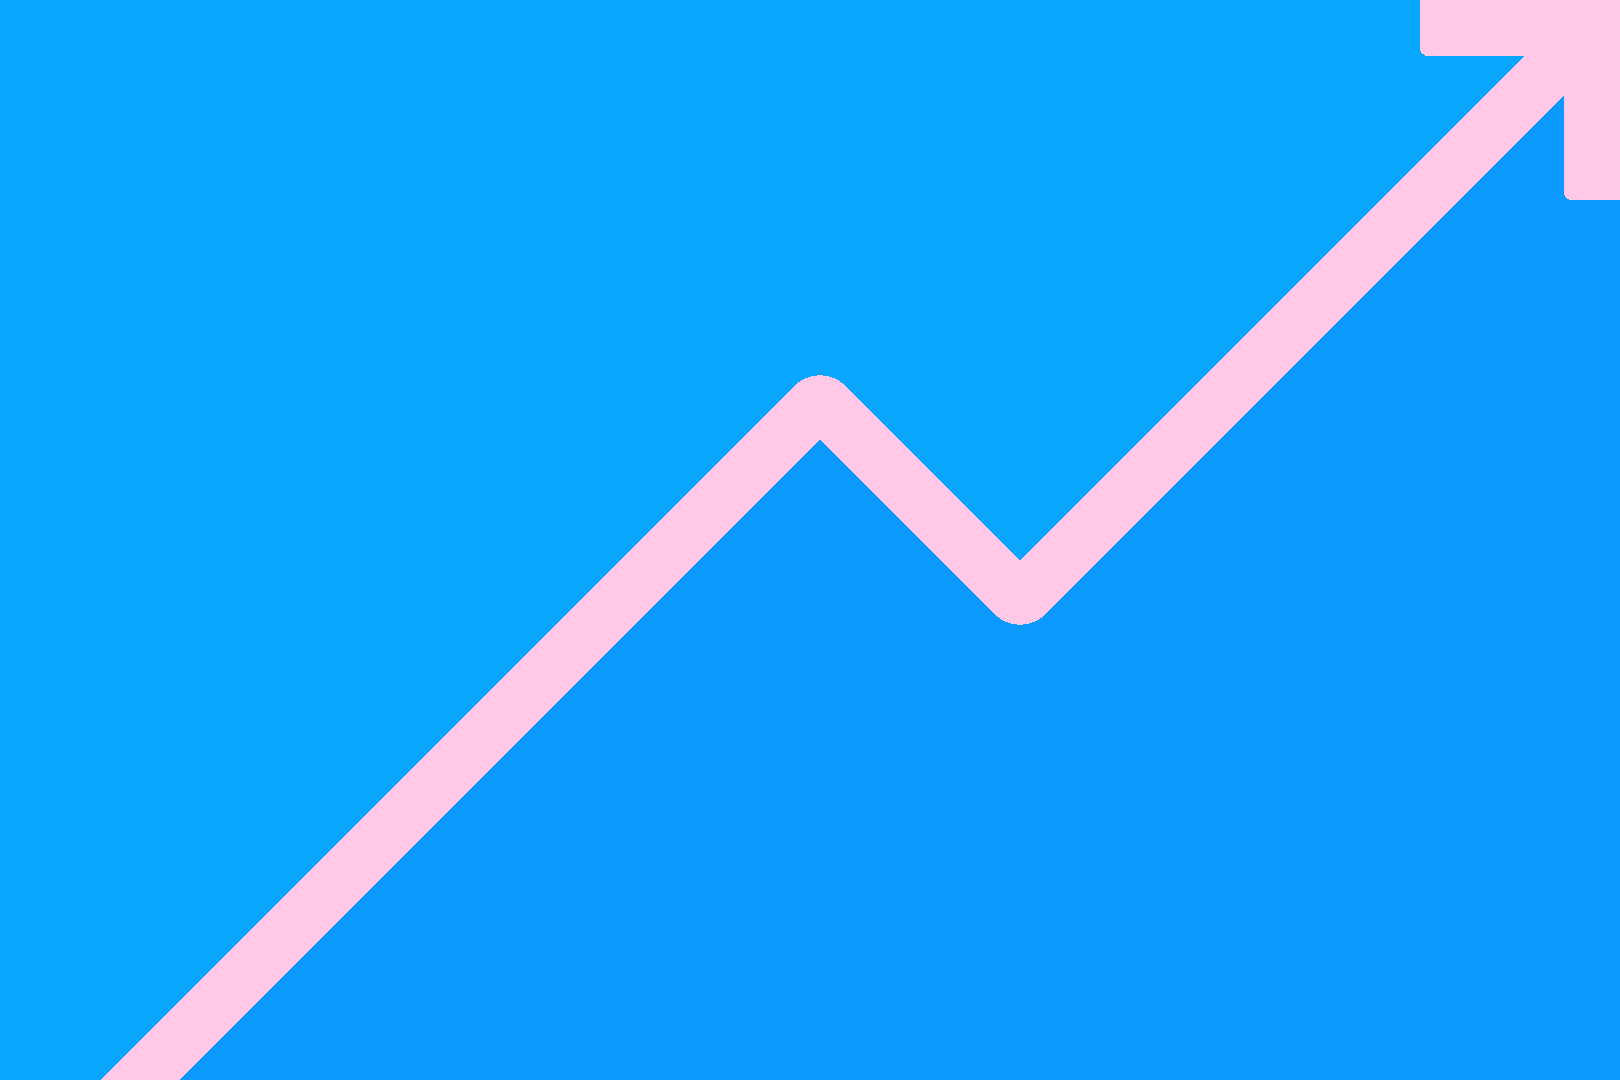 sinisellä taustalla oleva graafinen kuvio, jossa on vaalenpunainen nuoli osoittamassa oikeaan yläviistoon